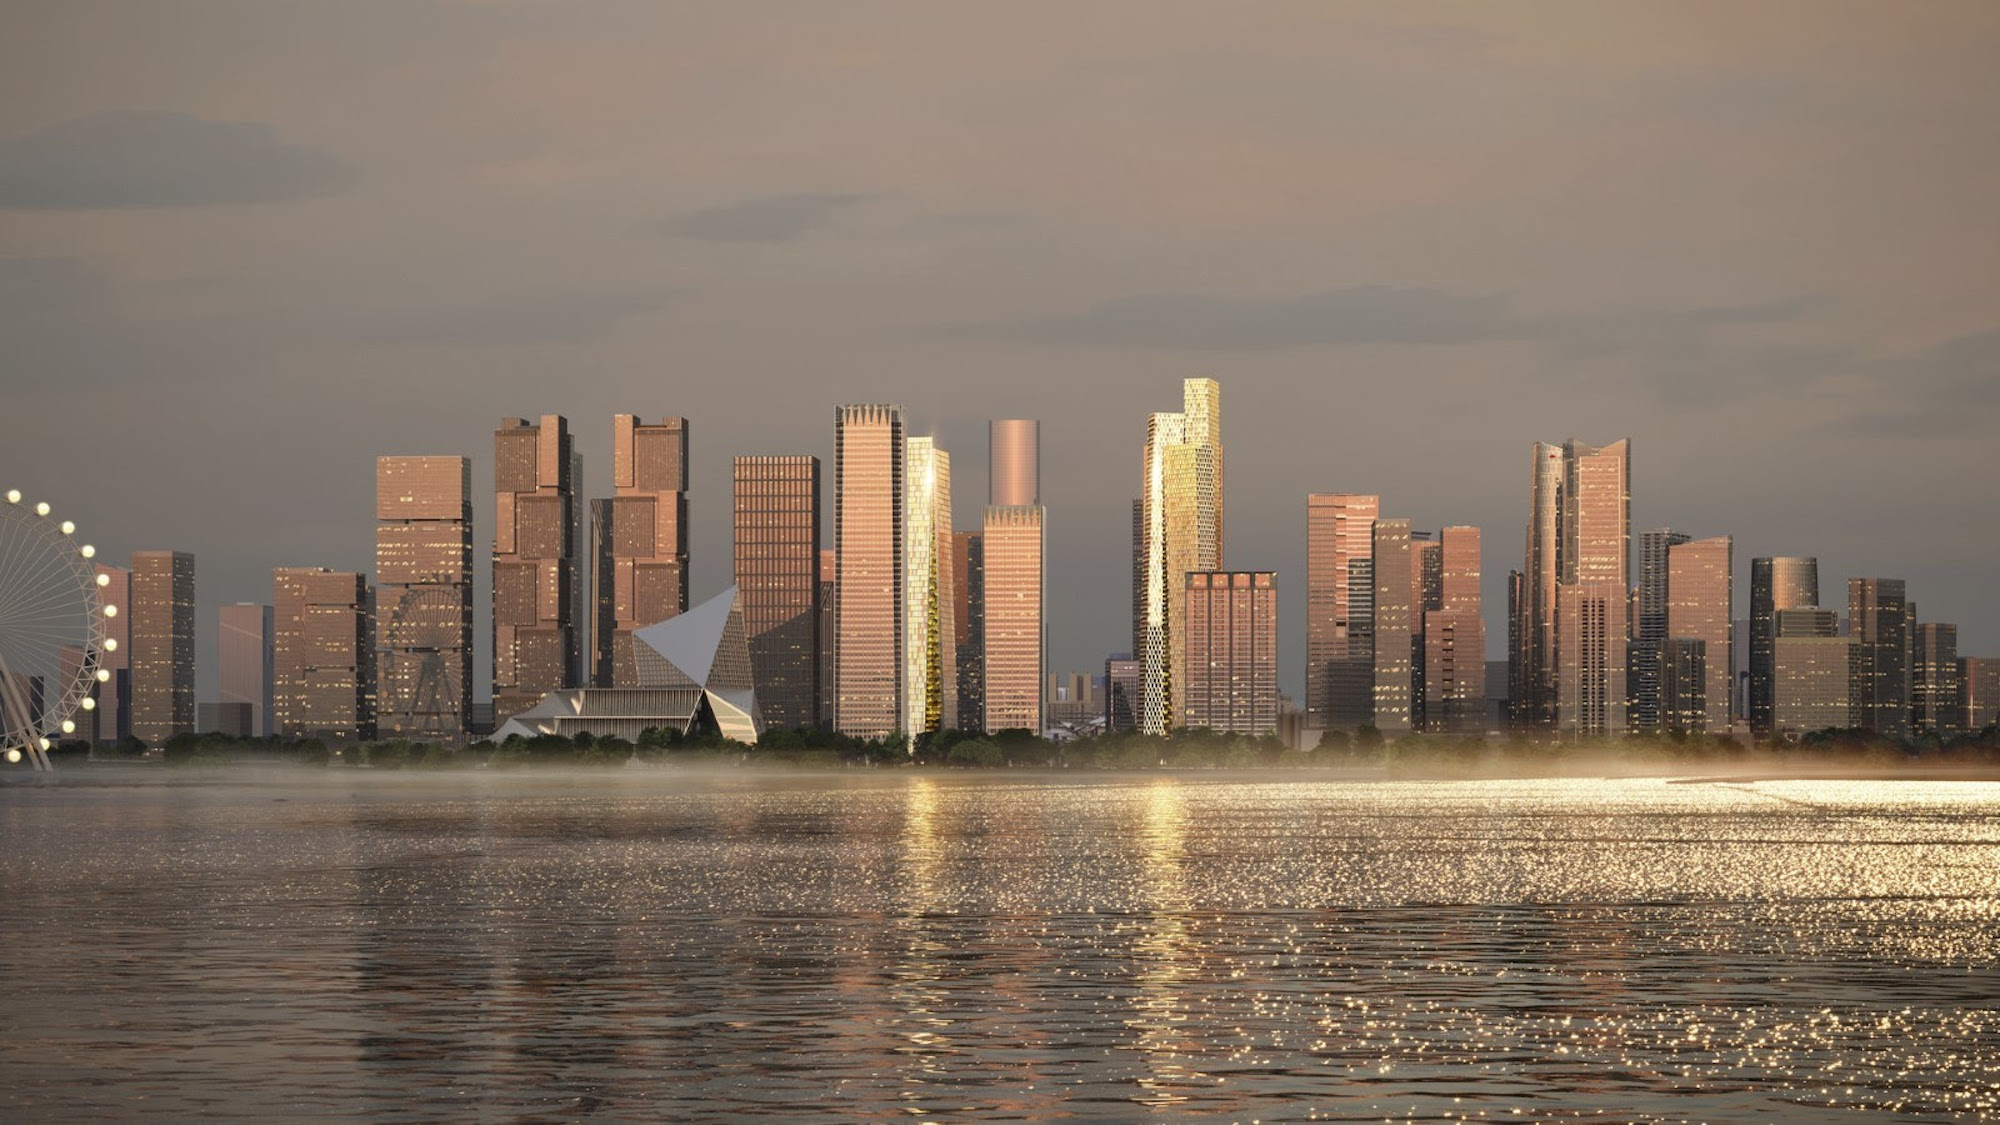 Qianhai Prisma Towers by BIG Bjarke Ingels Group Rendering Atchain 5